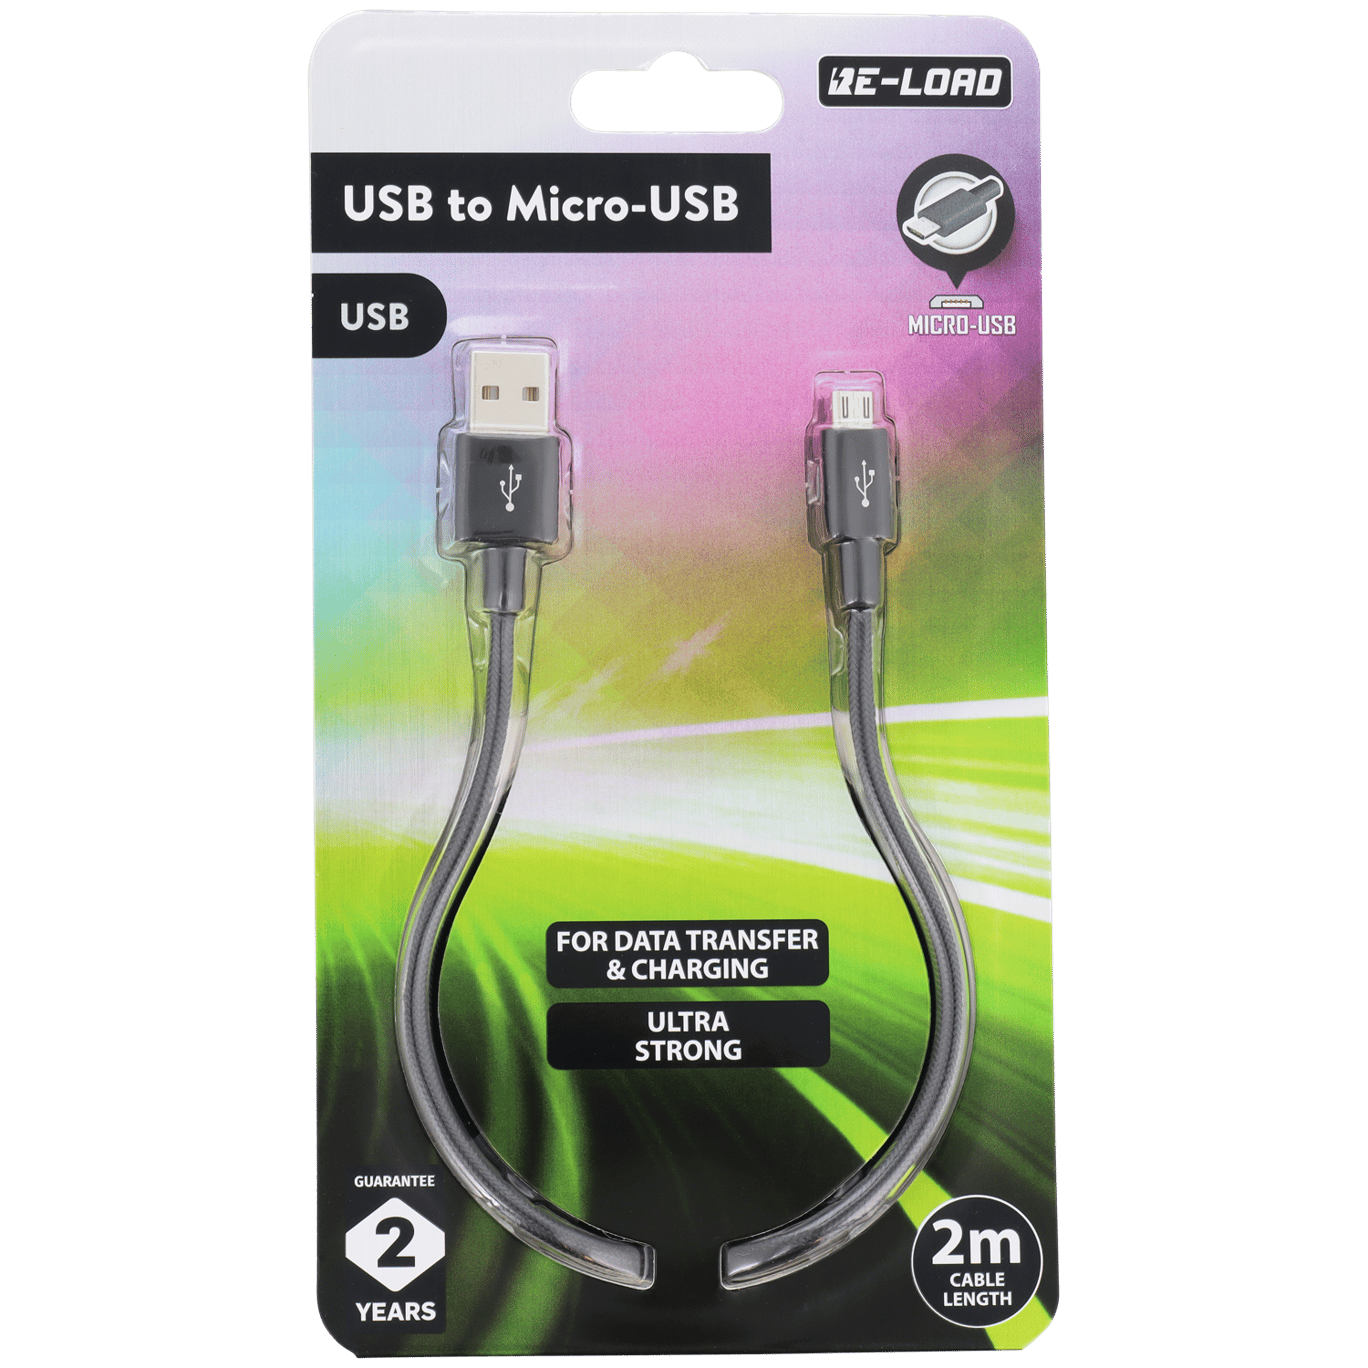 Cable con micro-USB Re-load